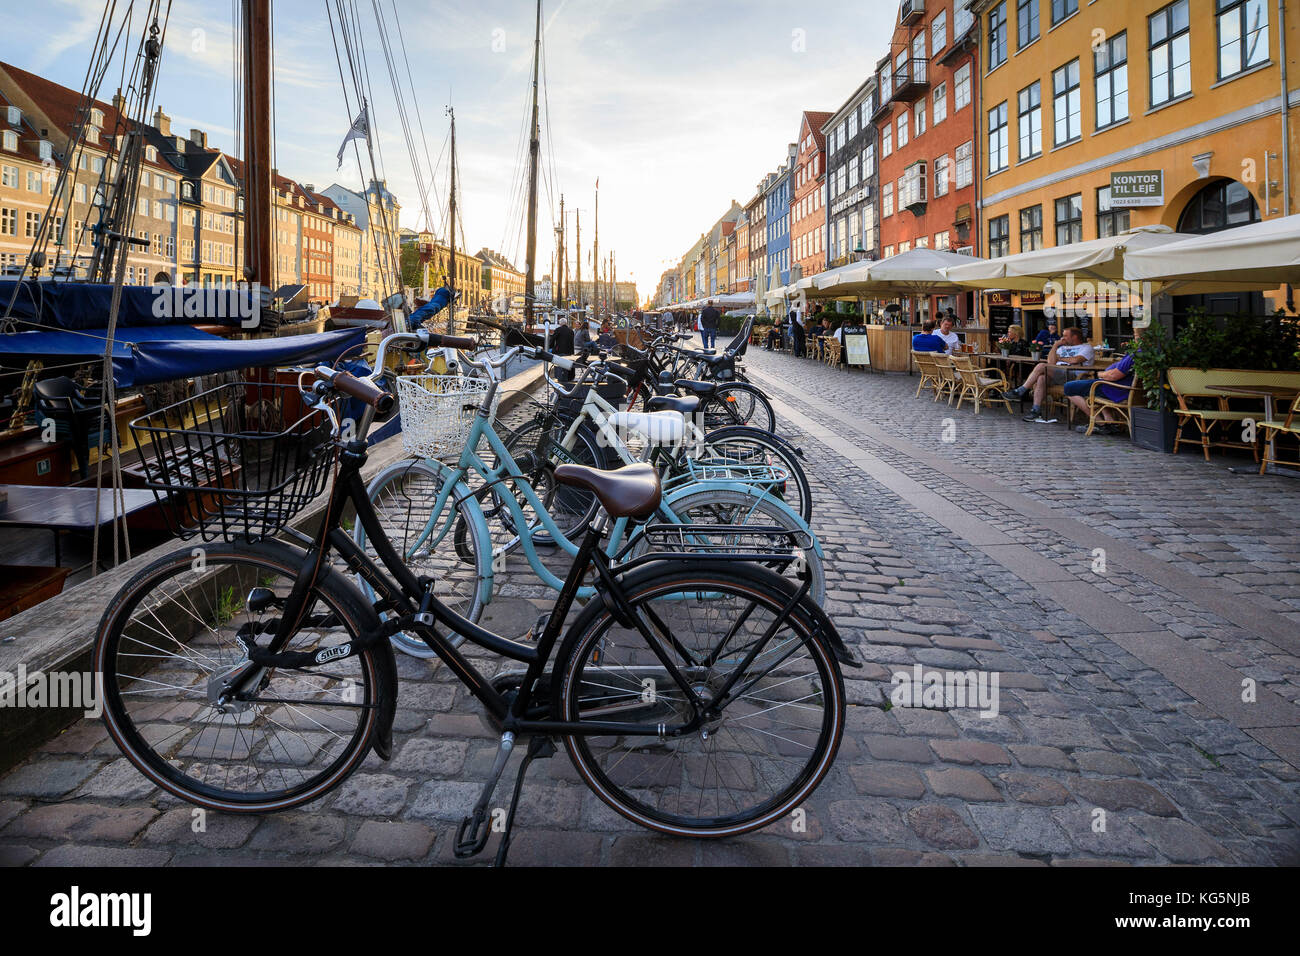 Des vélos et des restaurants typiques dans le secteur riverain du quartier de divertissements de Nyhavn, Copenhague, Danemark, Europe Banque D'Images